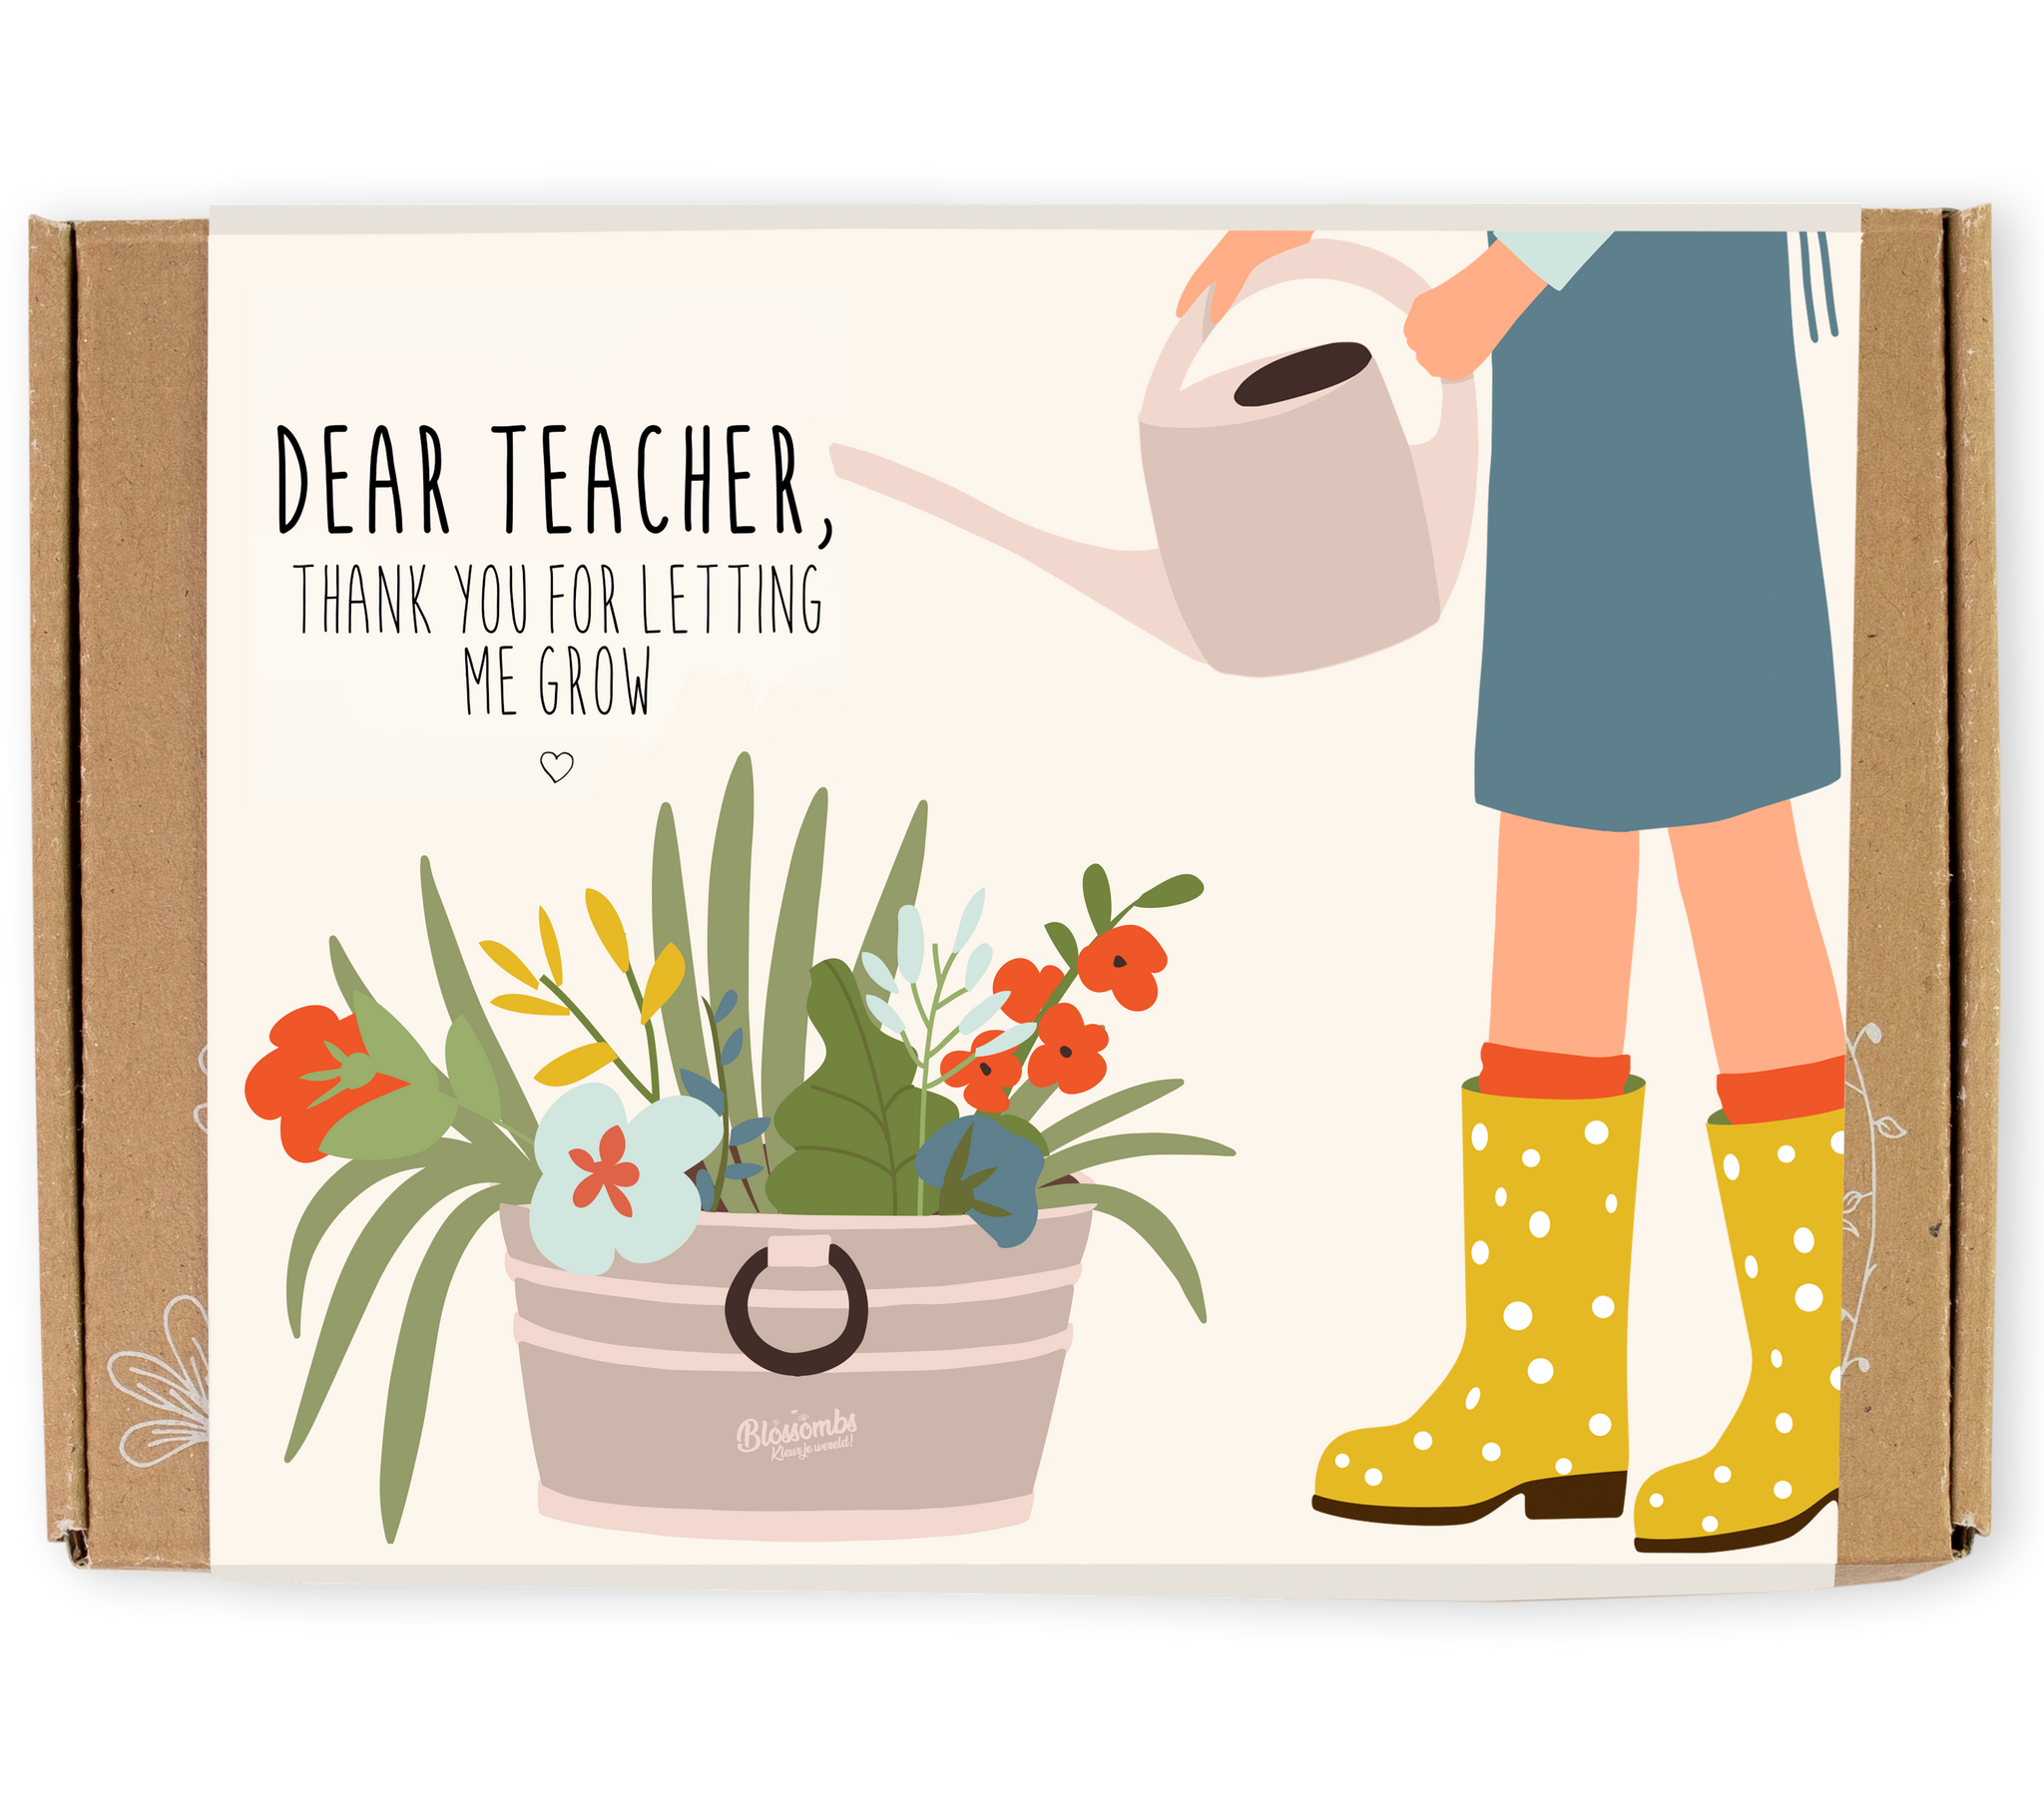 dear teacher, thank you for helping me grow